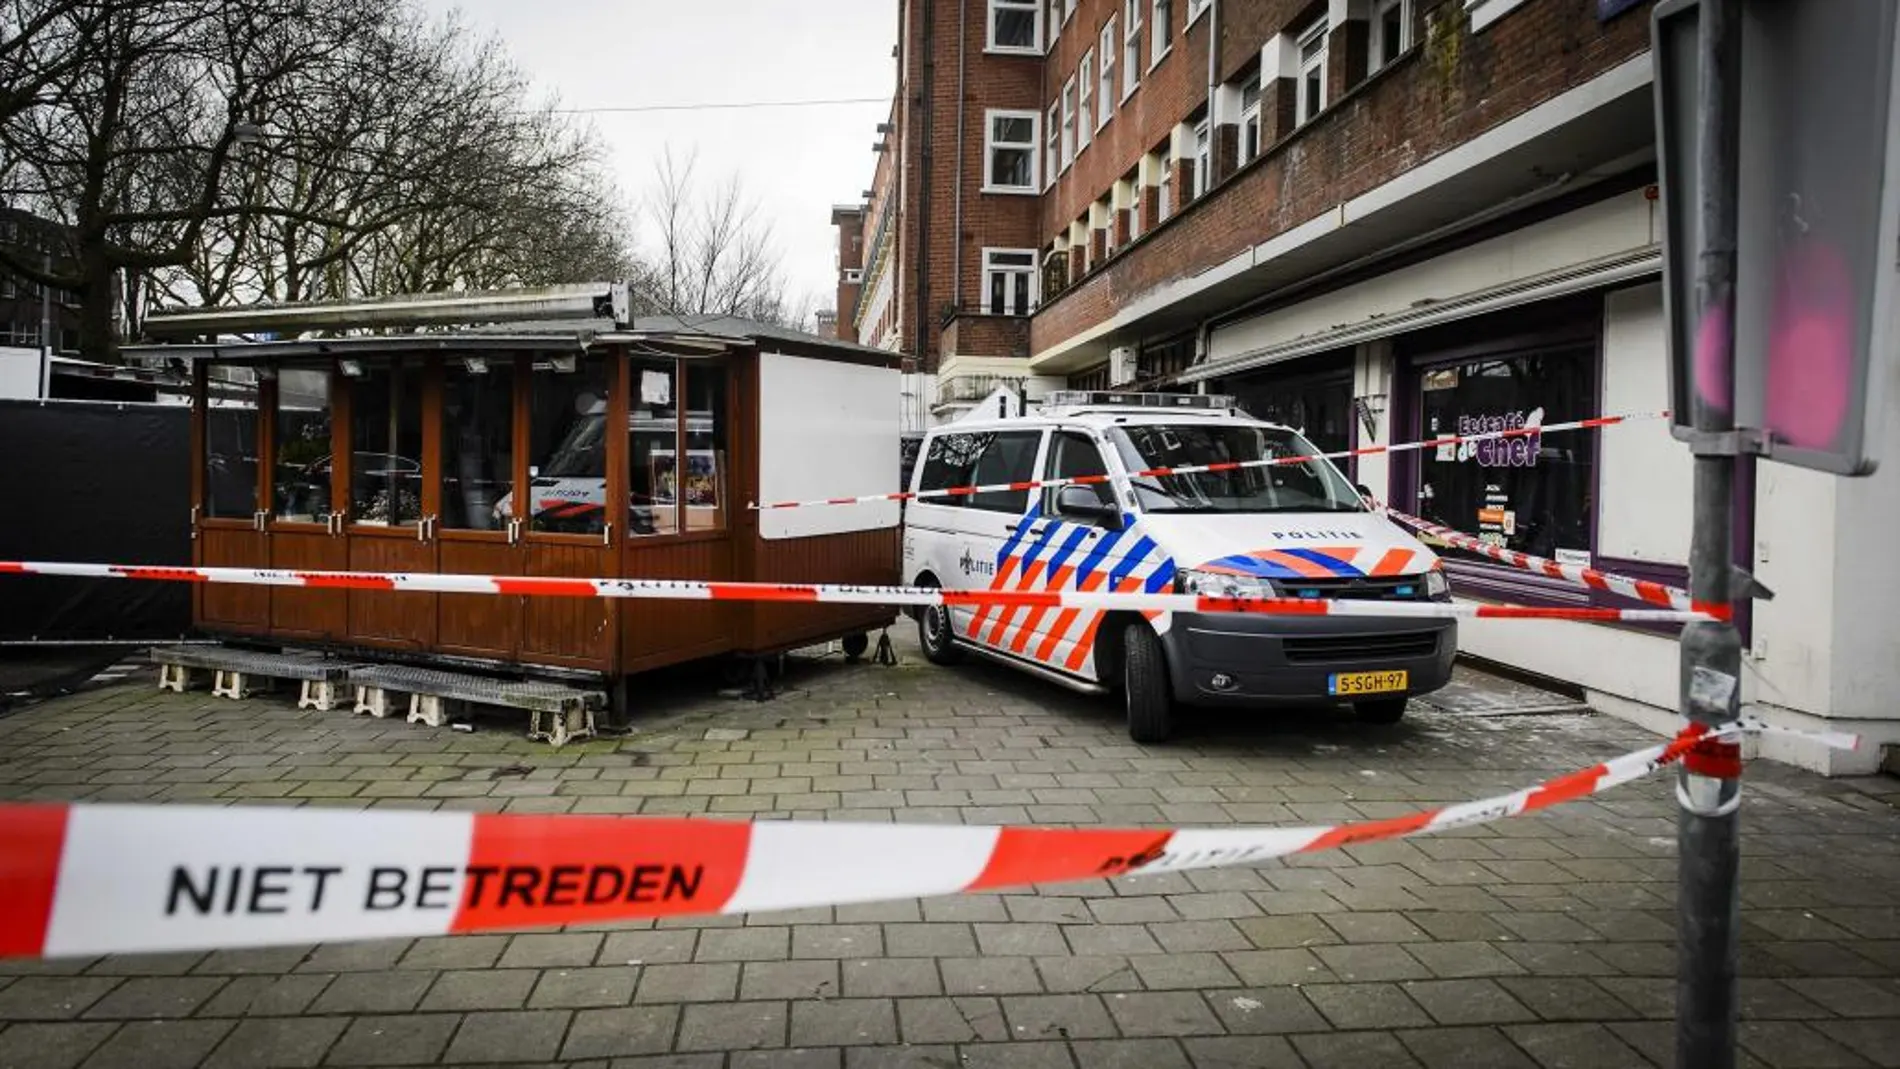 Policías investigan el lugar donde se han localizado una cabeza humana en el distrito de Amstelveenseweg en Amsterdam